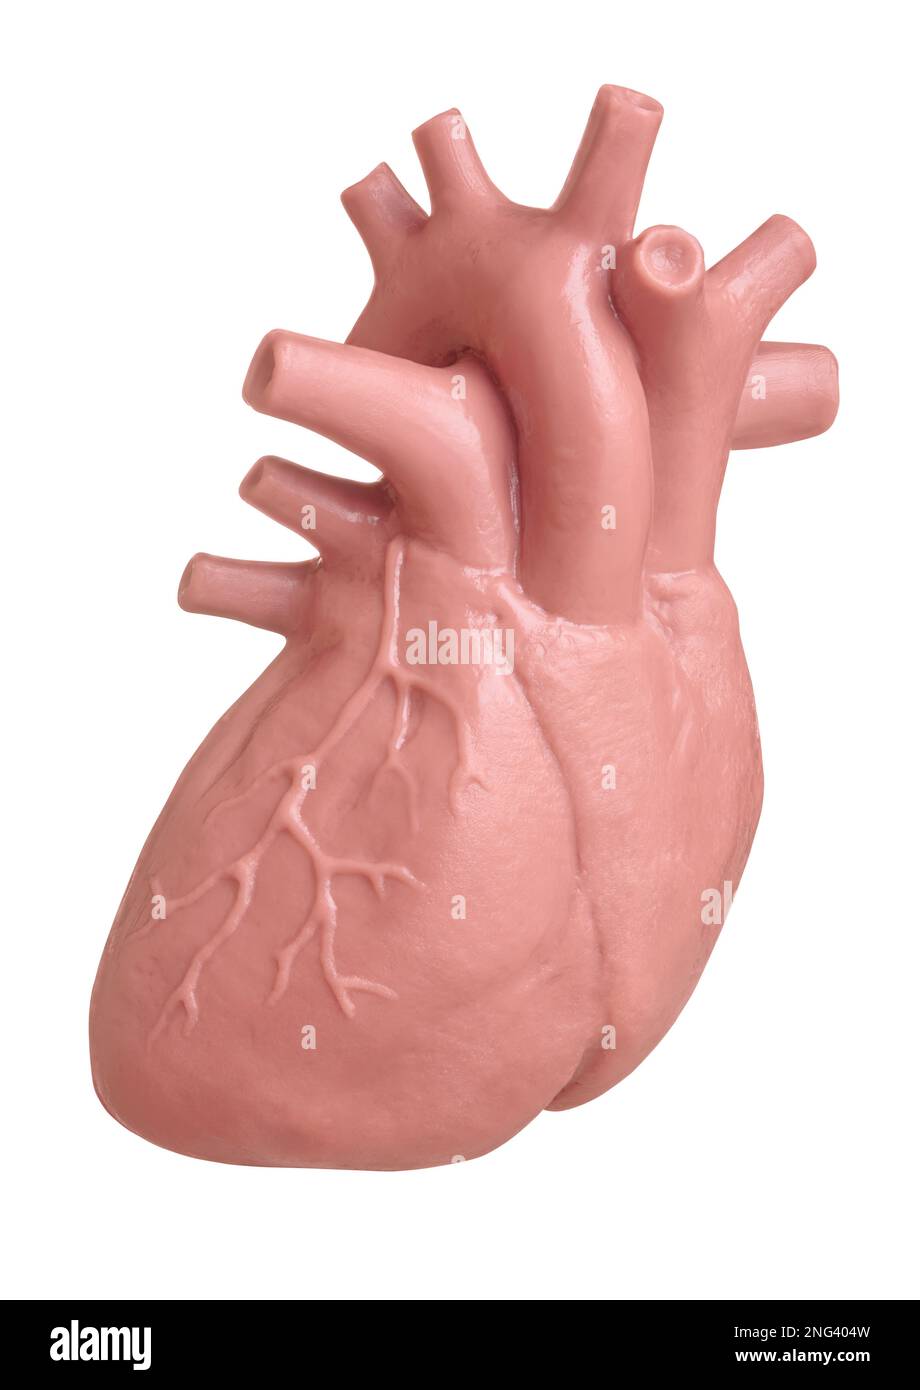 Modello di cuore umano isolato su sfondo bianco da vicino. Il concetto di cardiologia, assistenza sanitaria, trapianto di organi umani Foto Stock